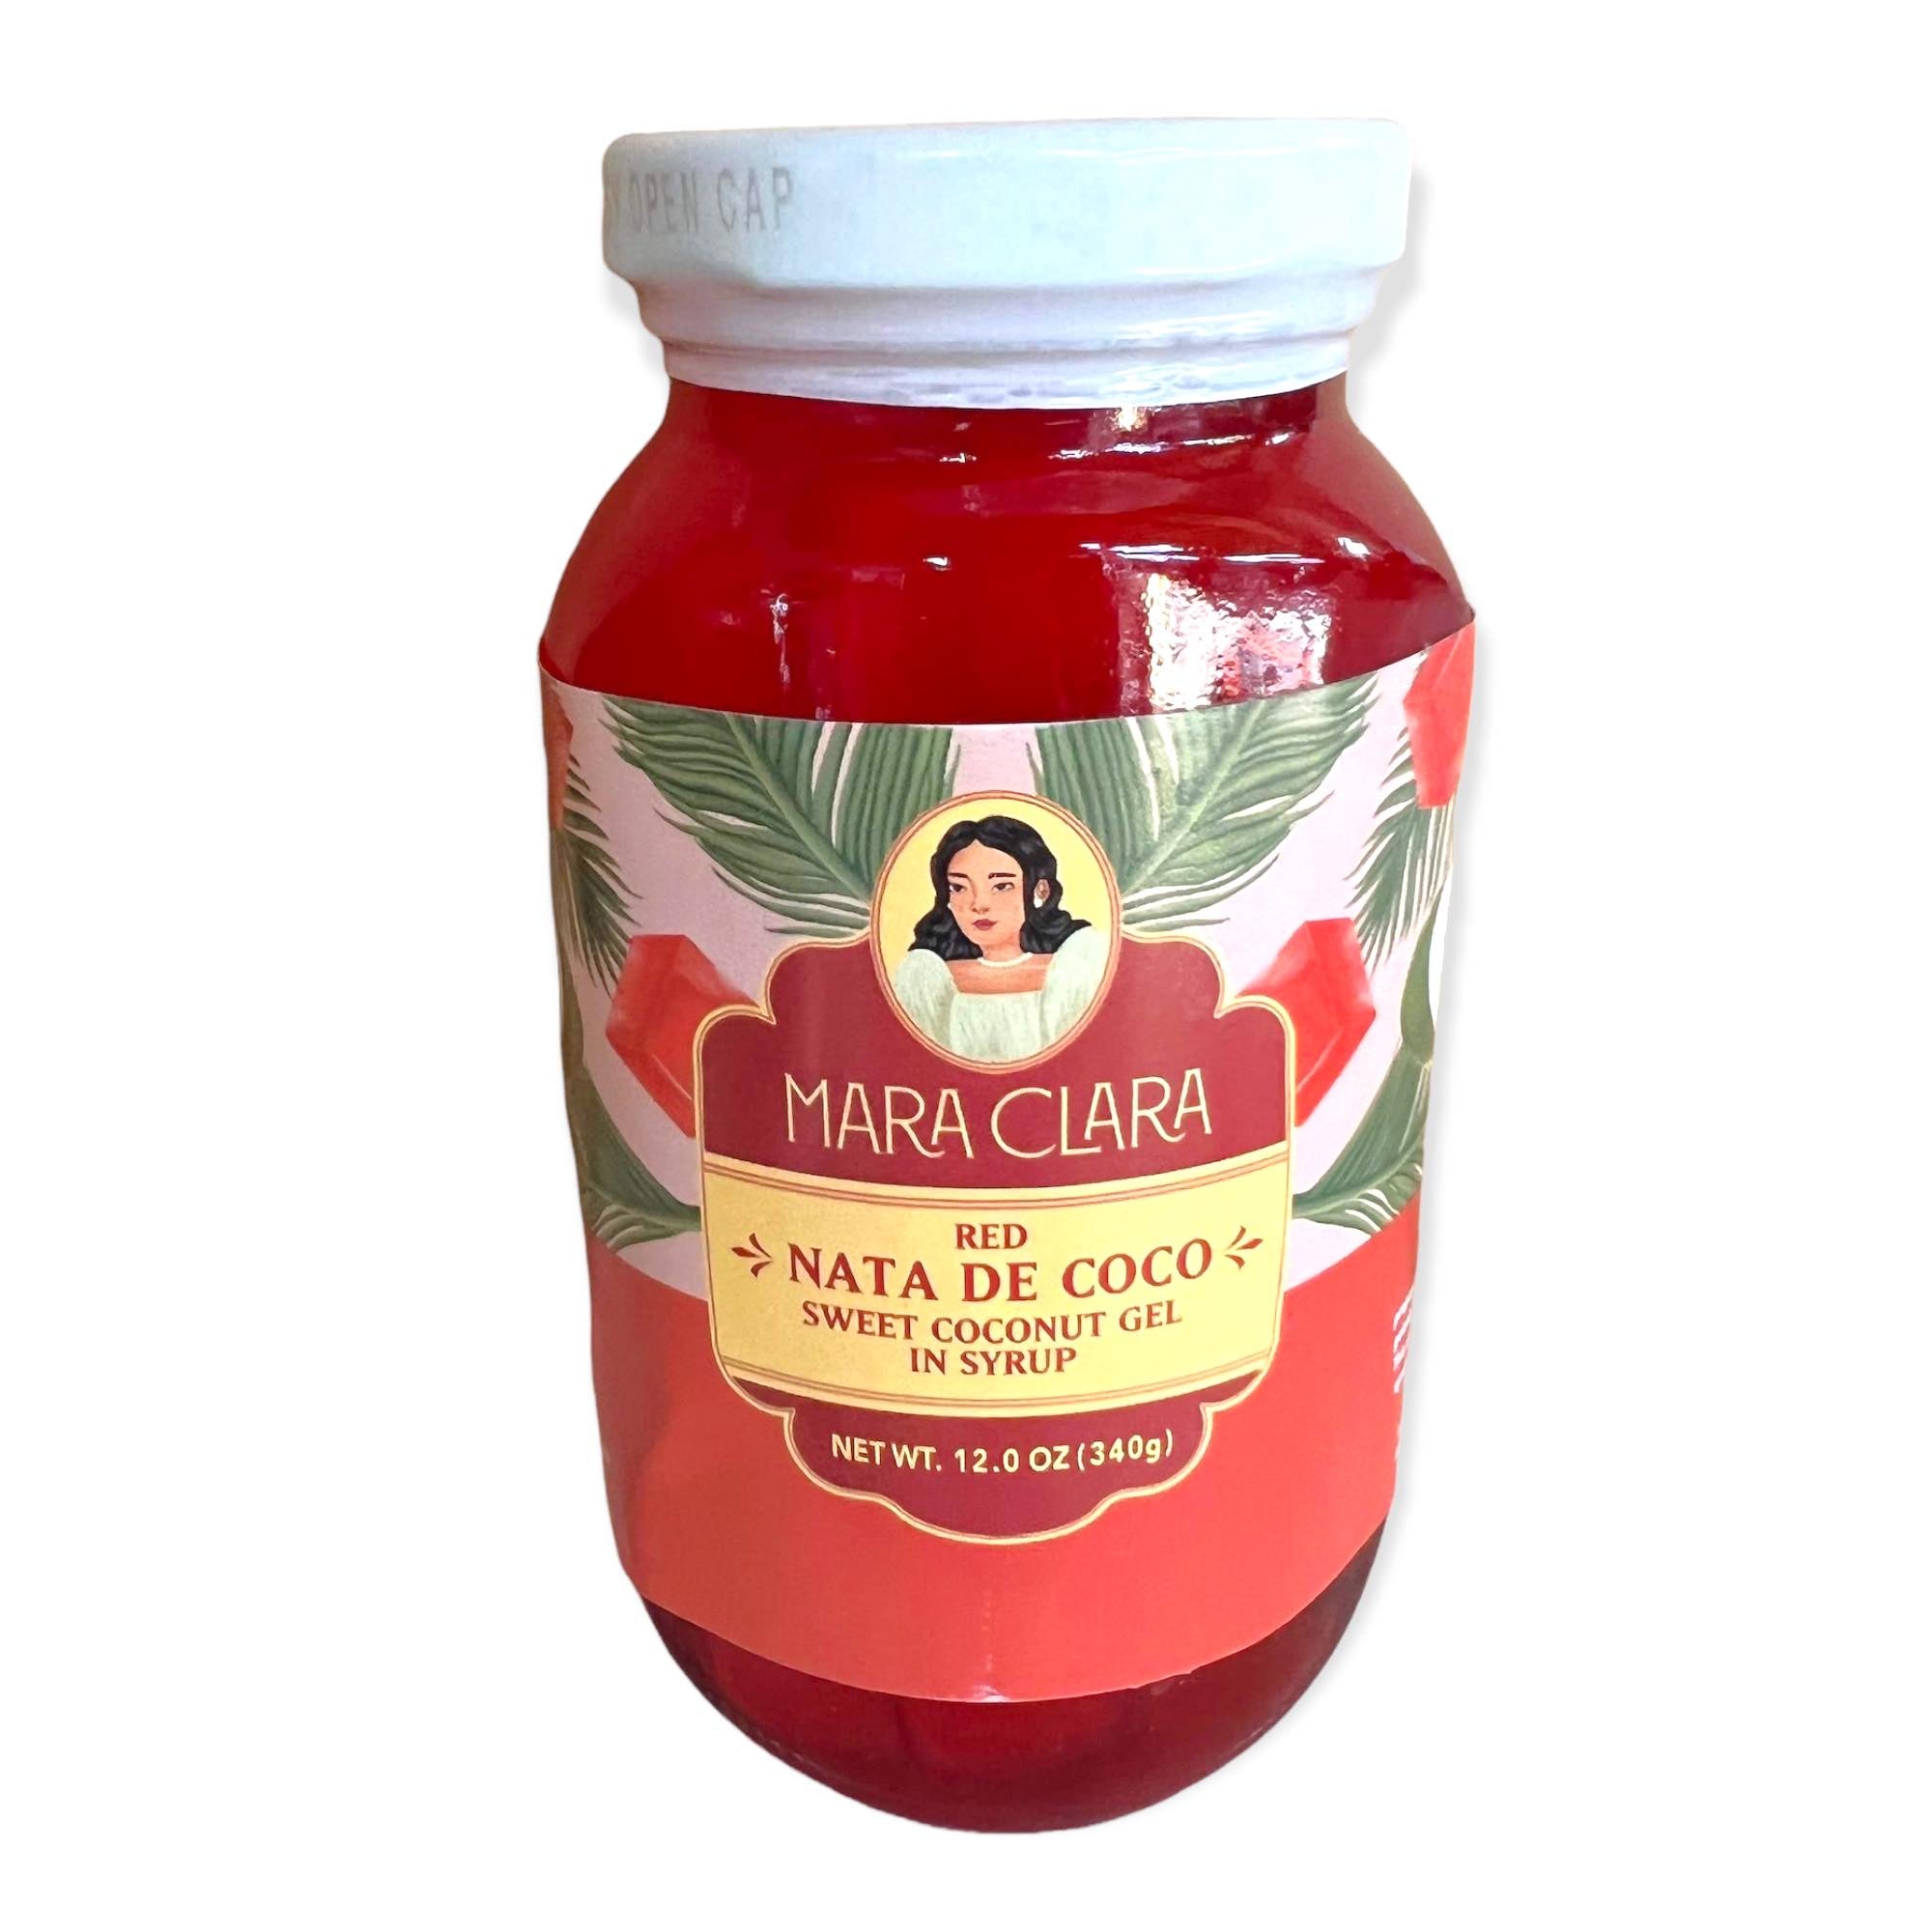 Mara Clara - Nata de Coco Red - Sweet Coconut Gel in Syrup - 12 OZ